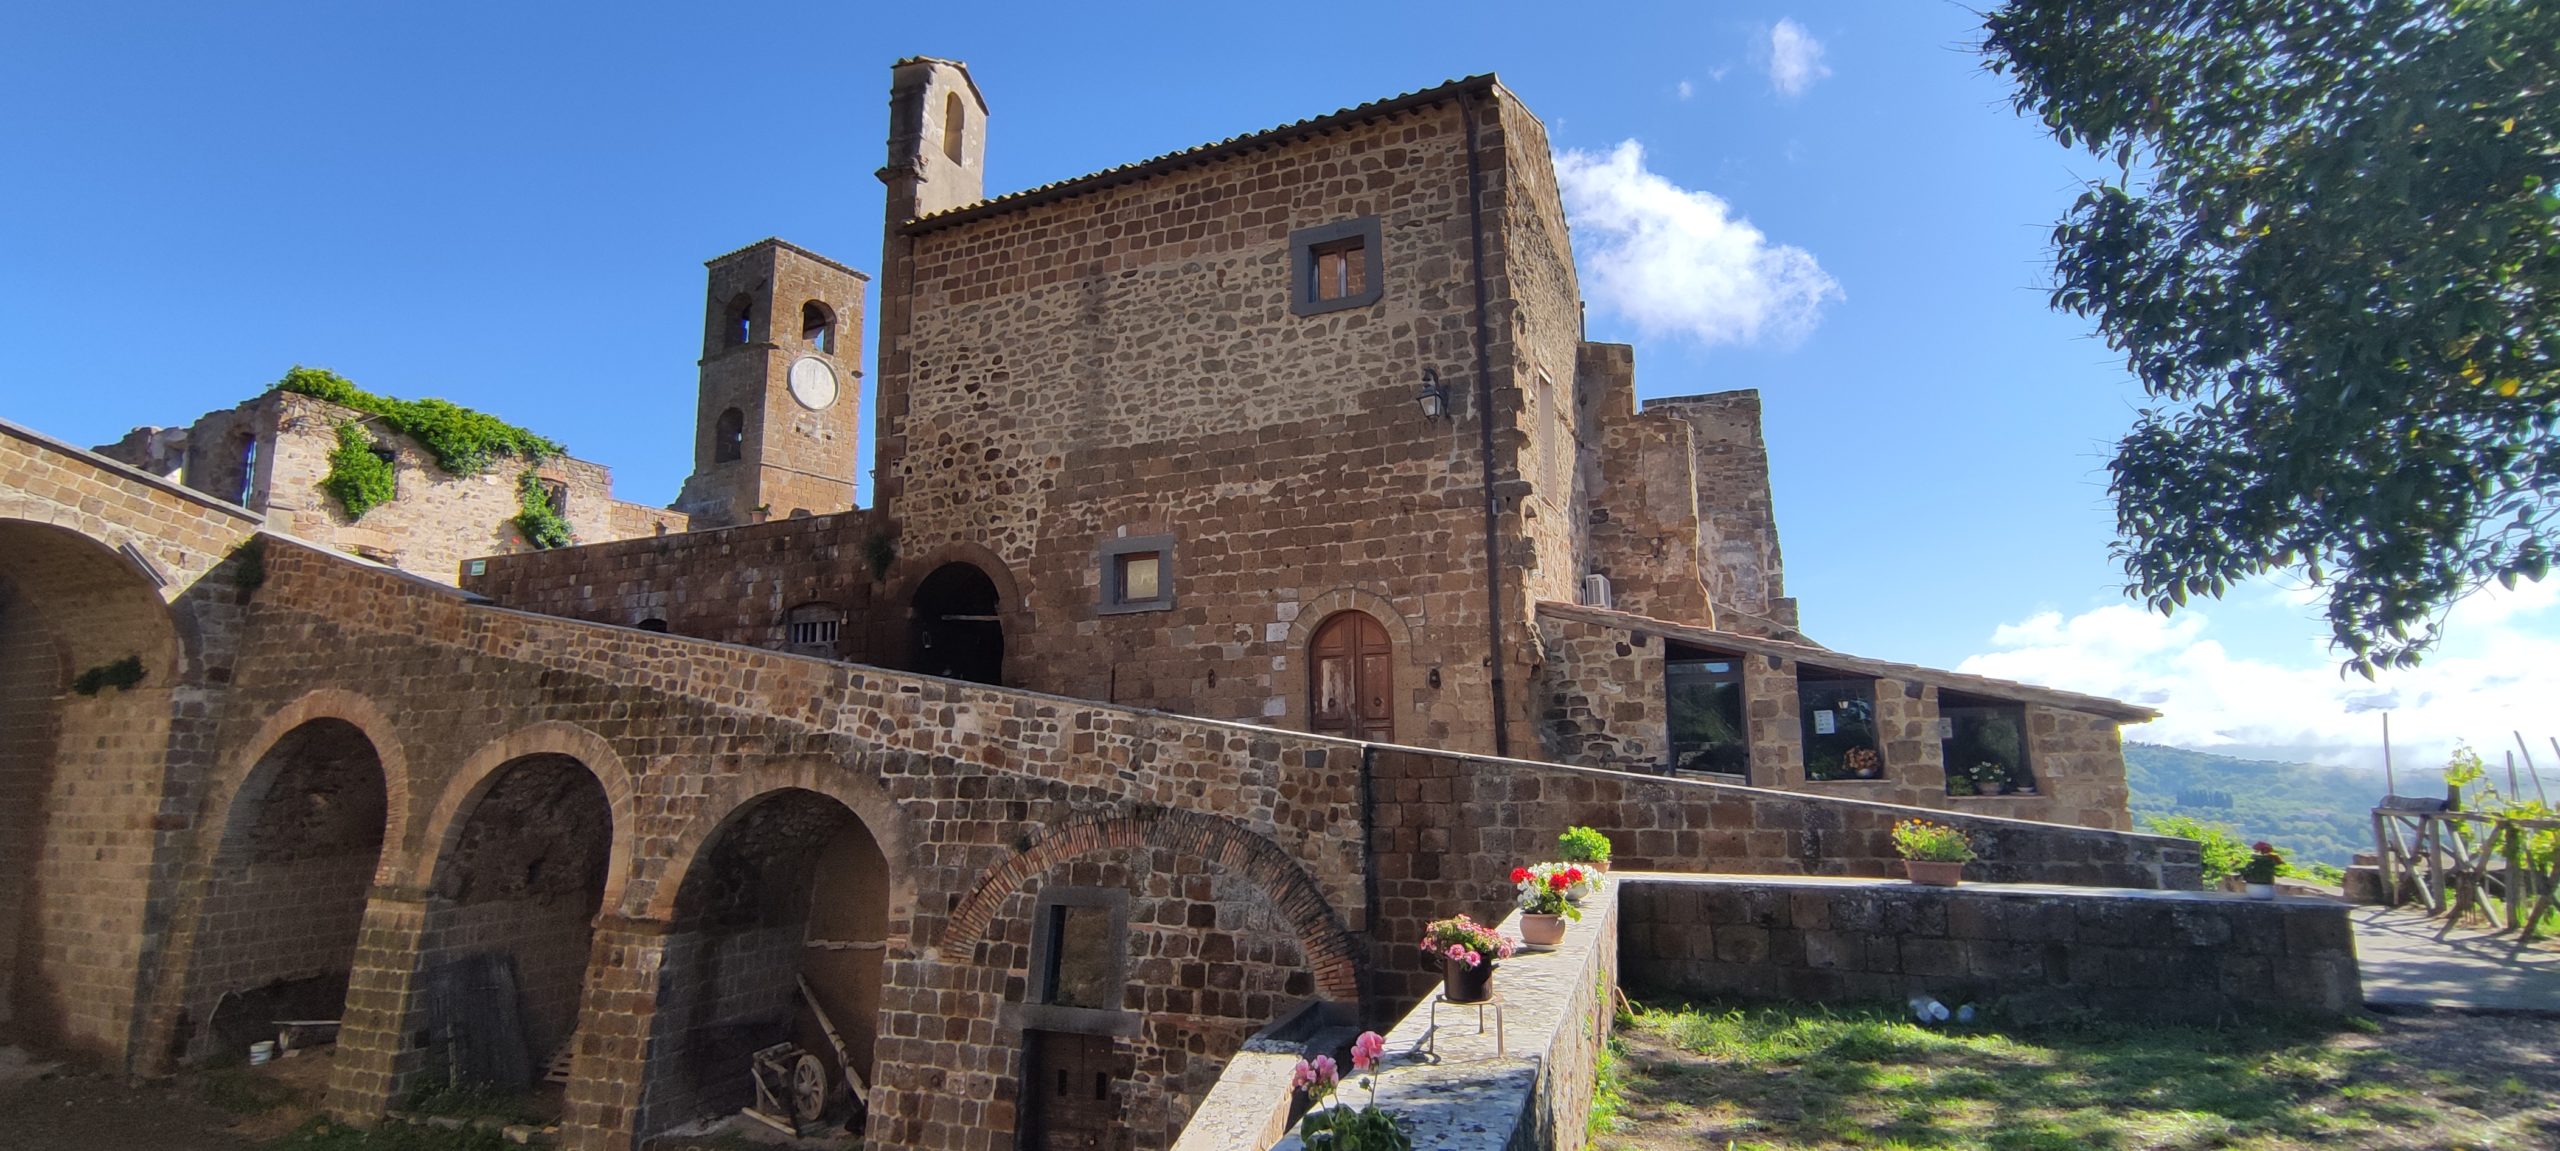 Celleno il borgo fantasma - il fossato del castello e le chiese del borgo antico